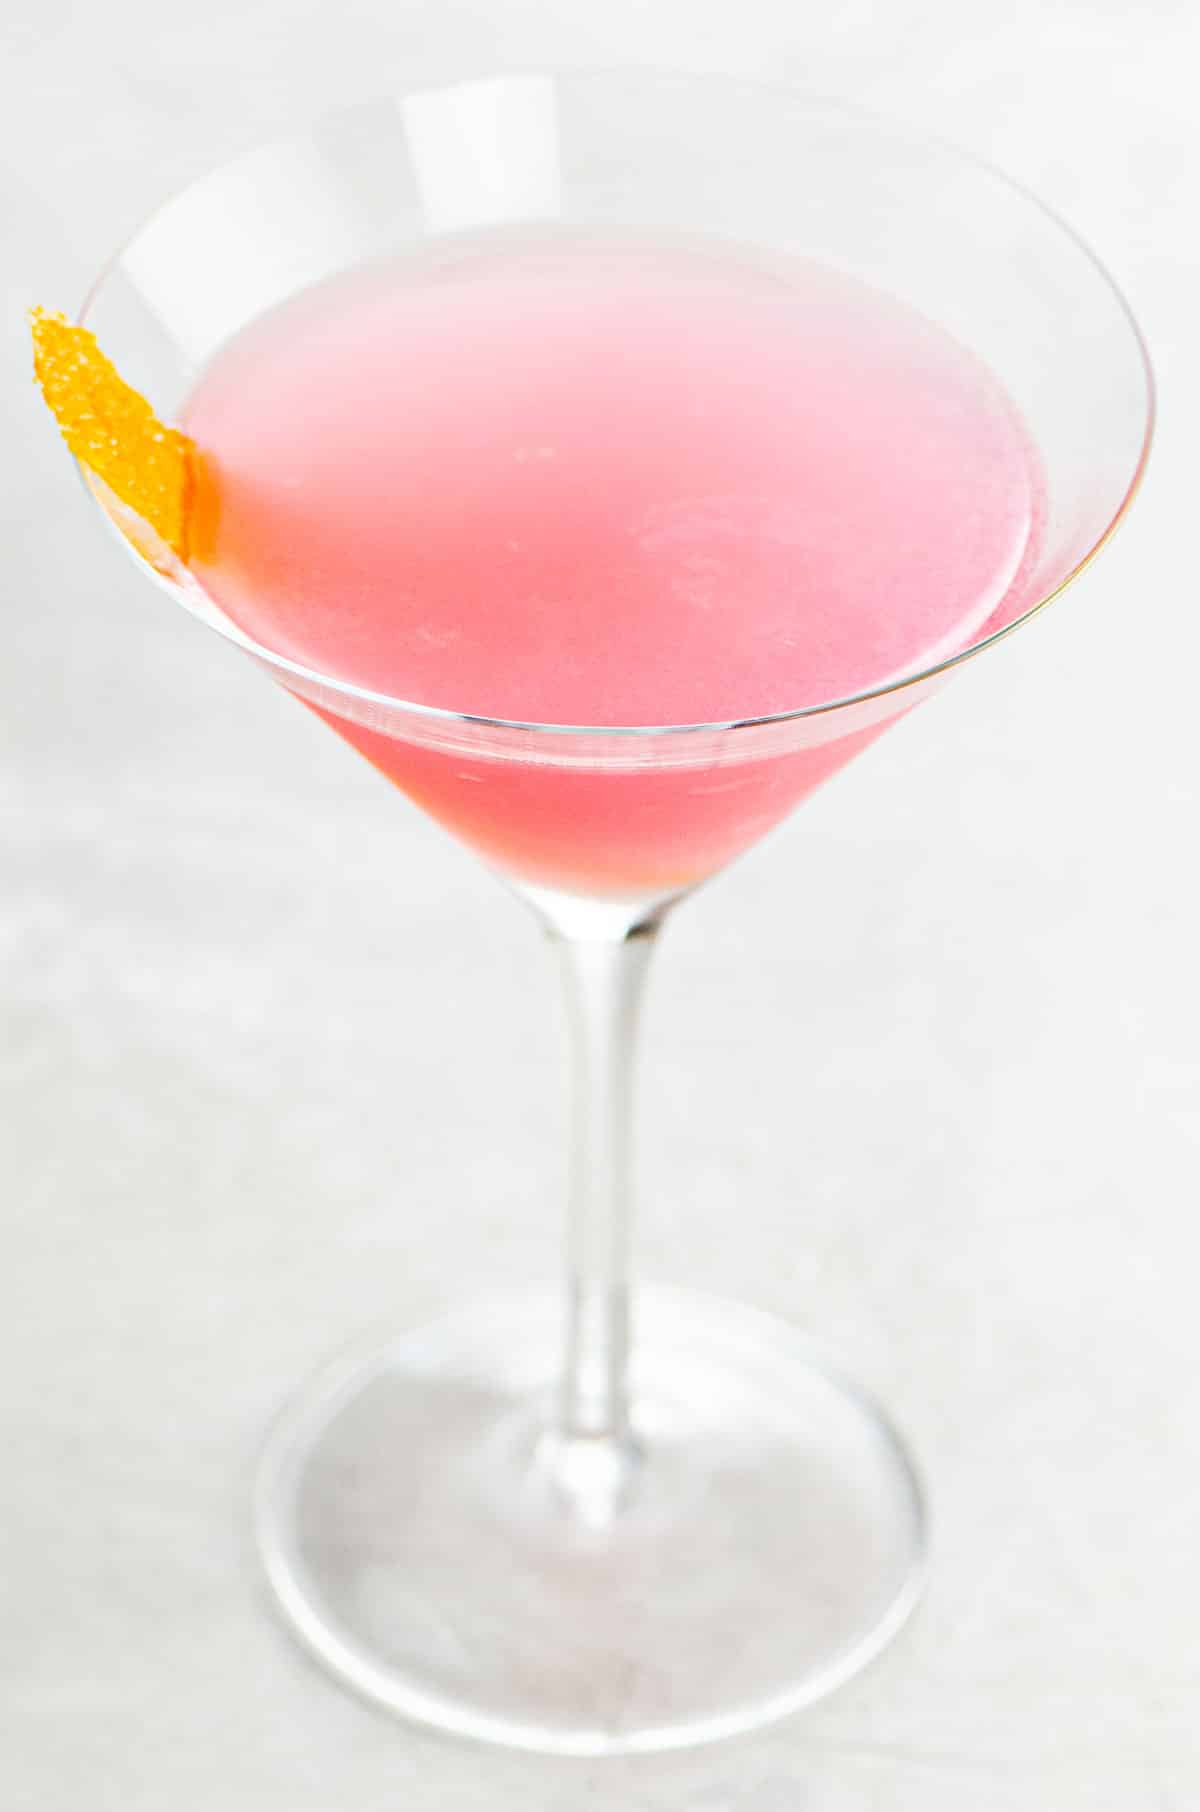 a pink cosmo (cosmopolitan cocktail recipe) in a martini glass